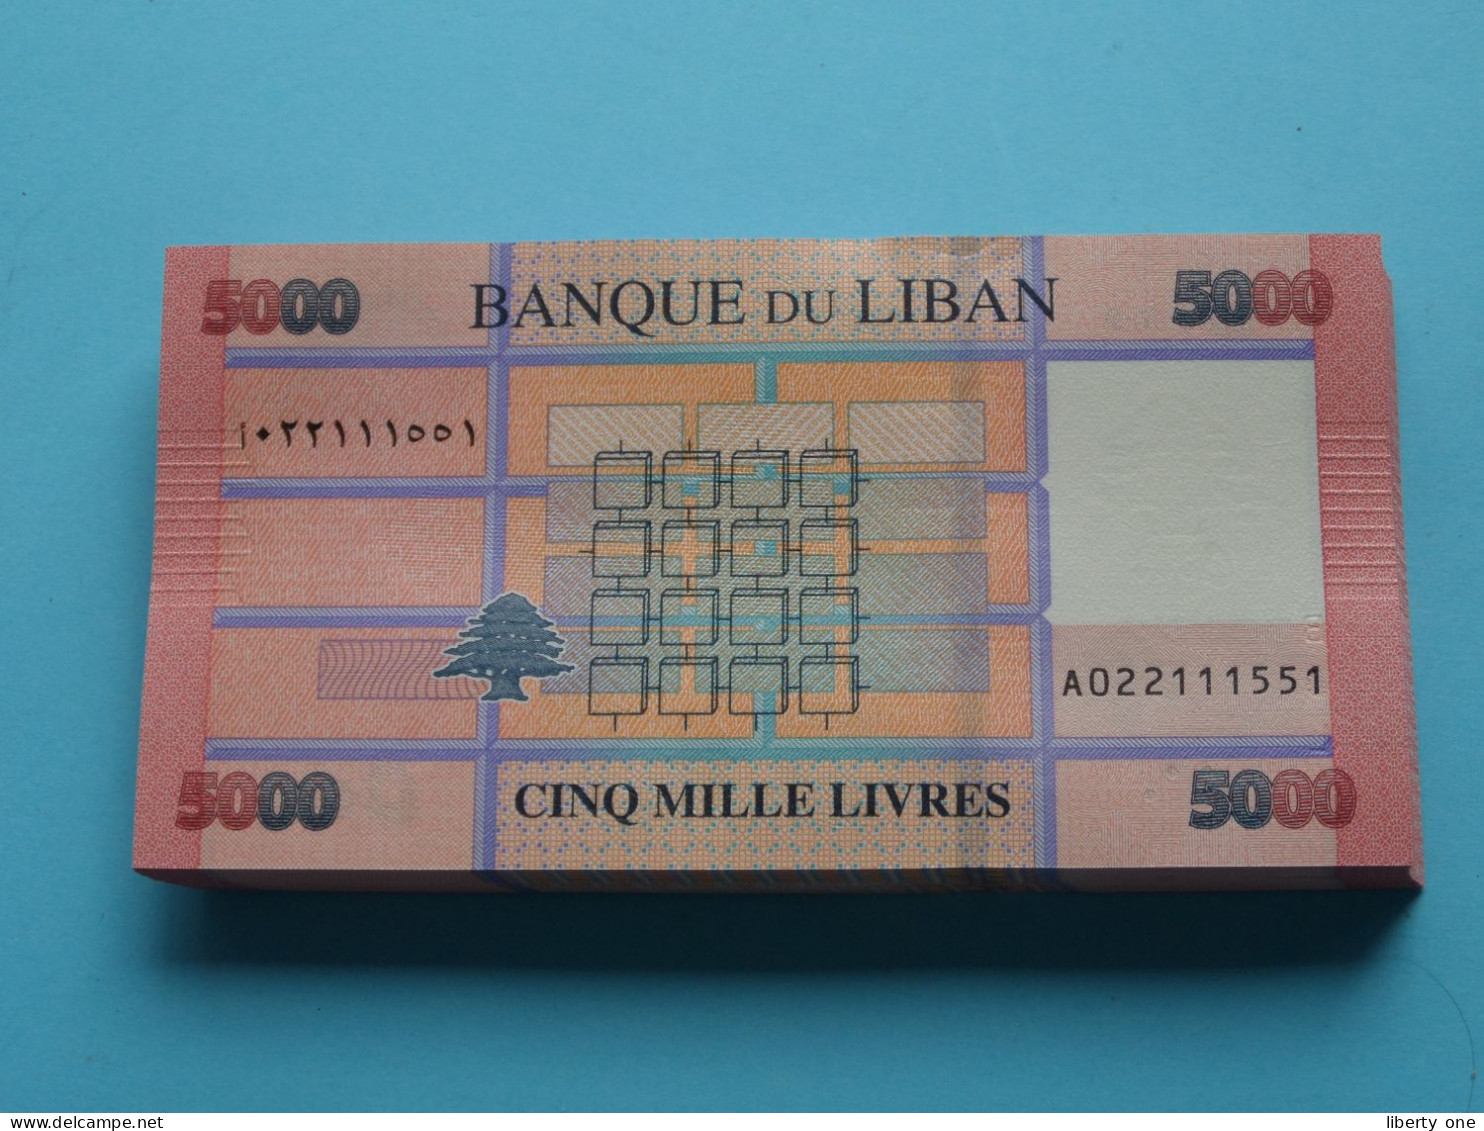 5000 Cinq Mille Livres ( Banque Du Liban ) Lebanon 2021 ( For Grade, Please See SCANS ) UNC ! - Líbano